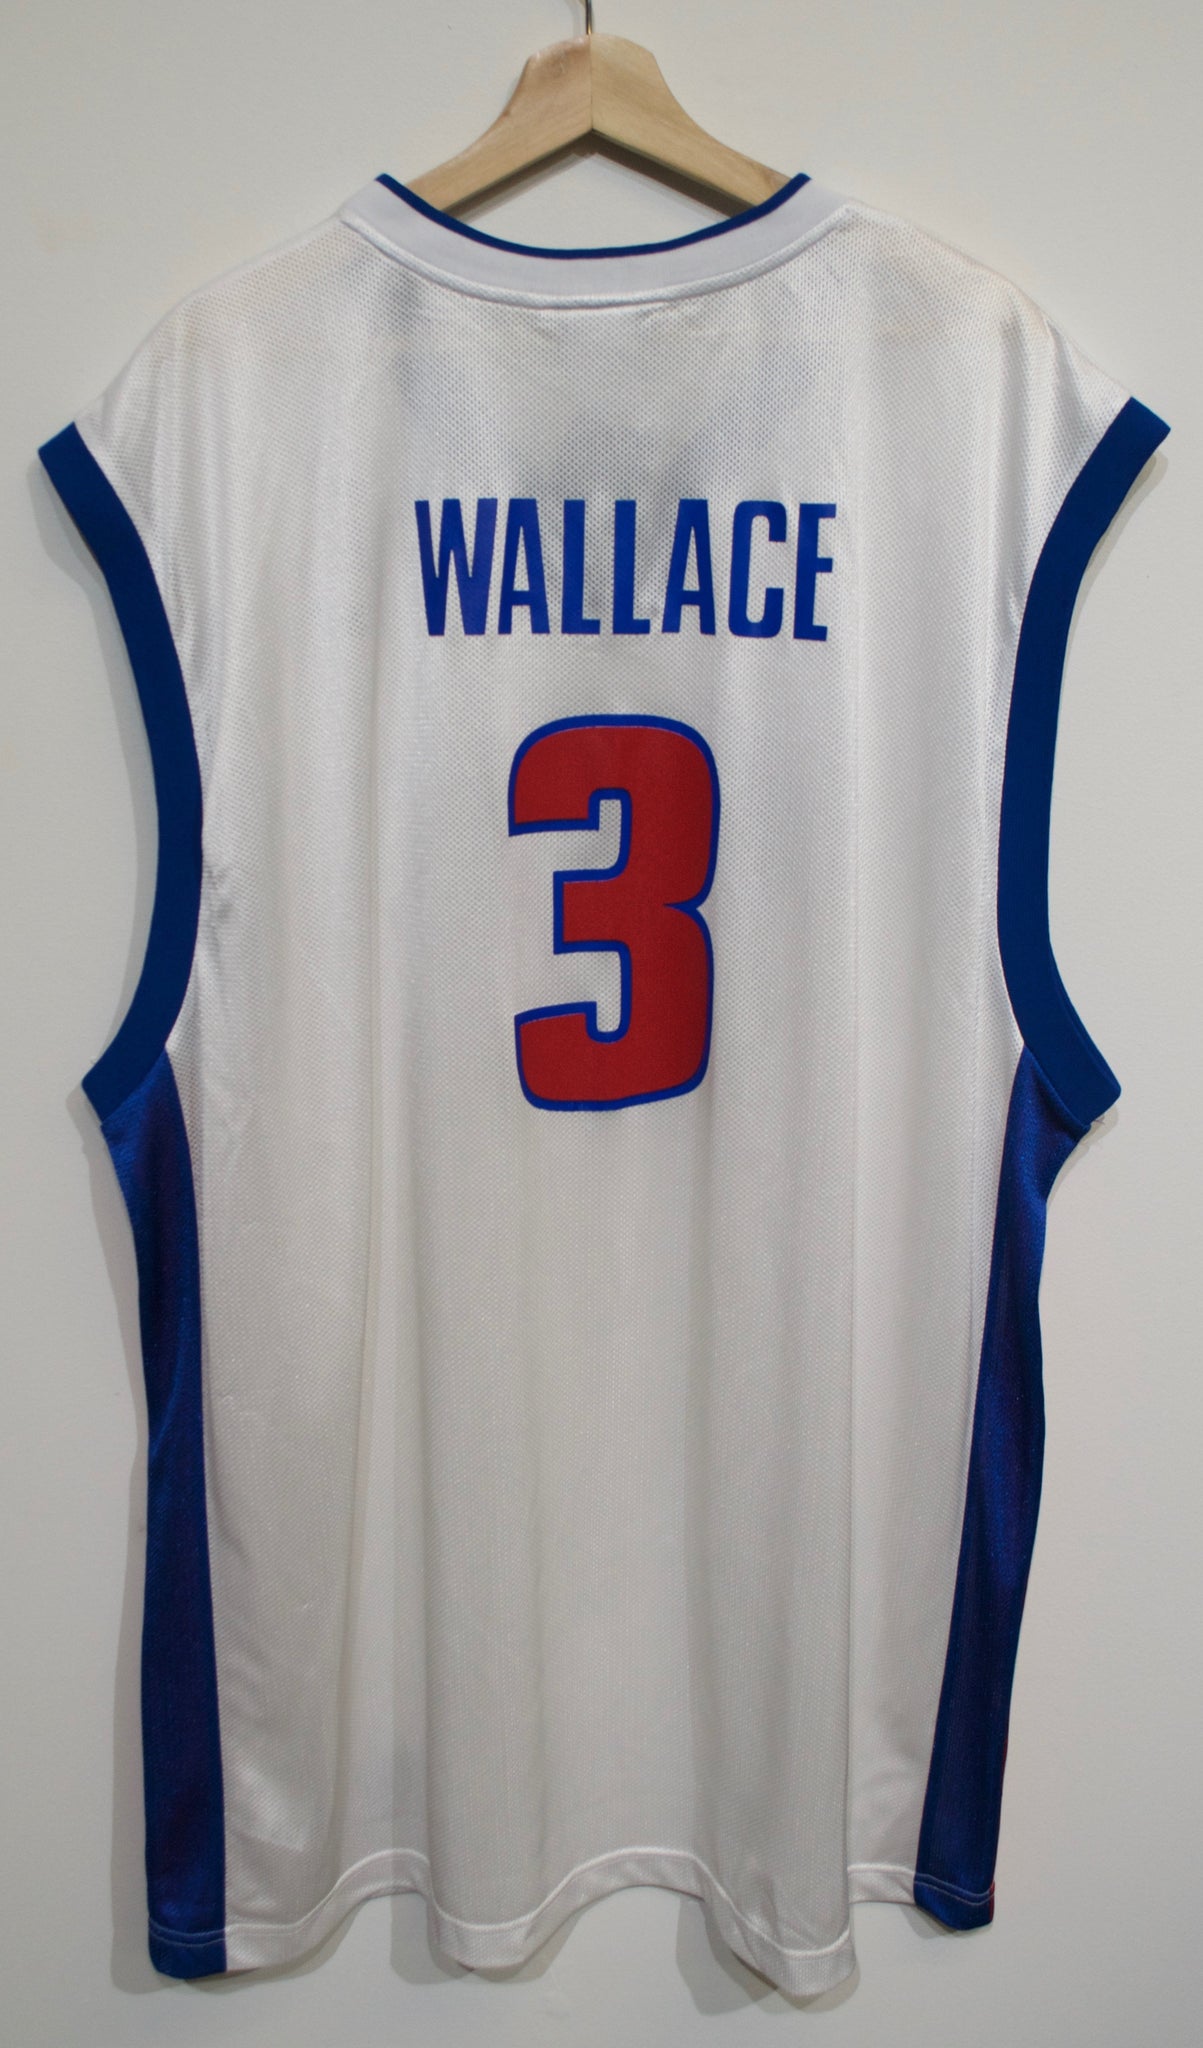 Detroit Pistons Ben Wallace jersey. A bit faded but - Depop